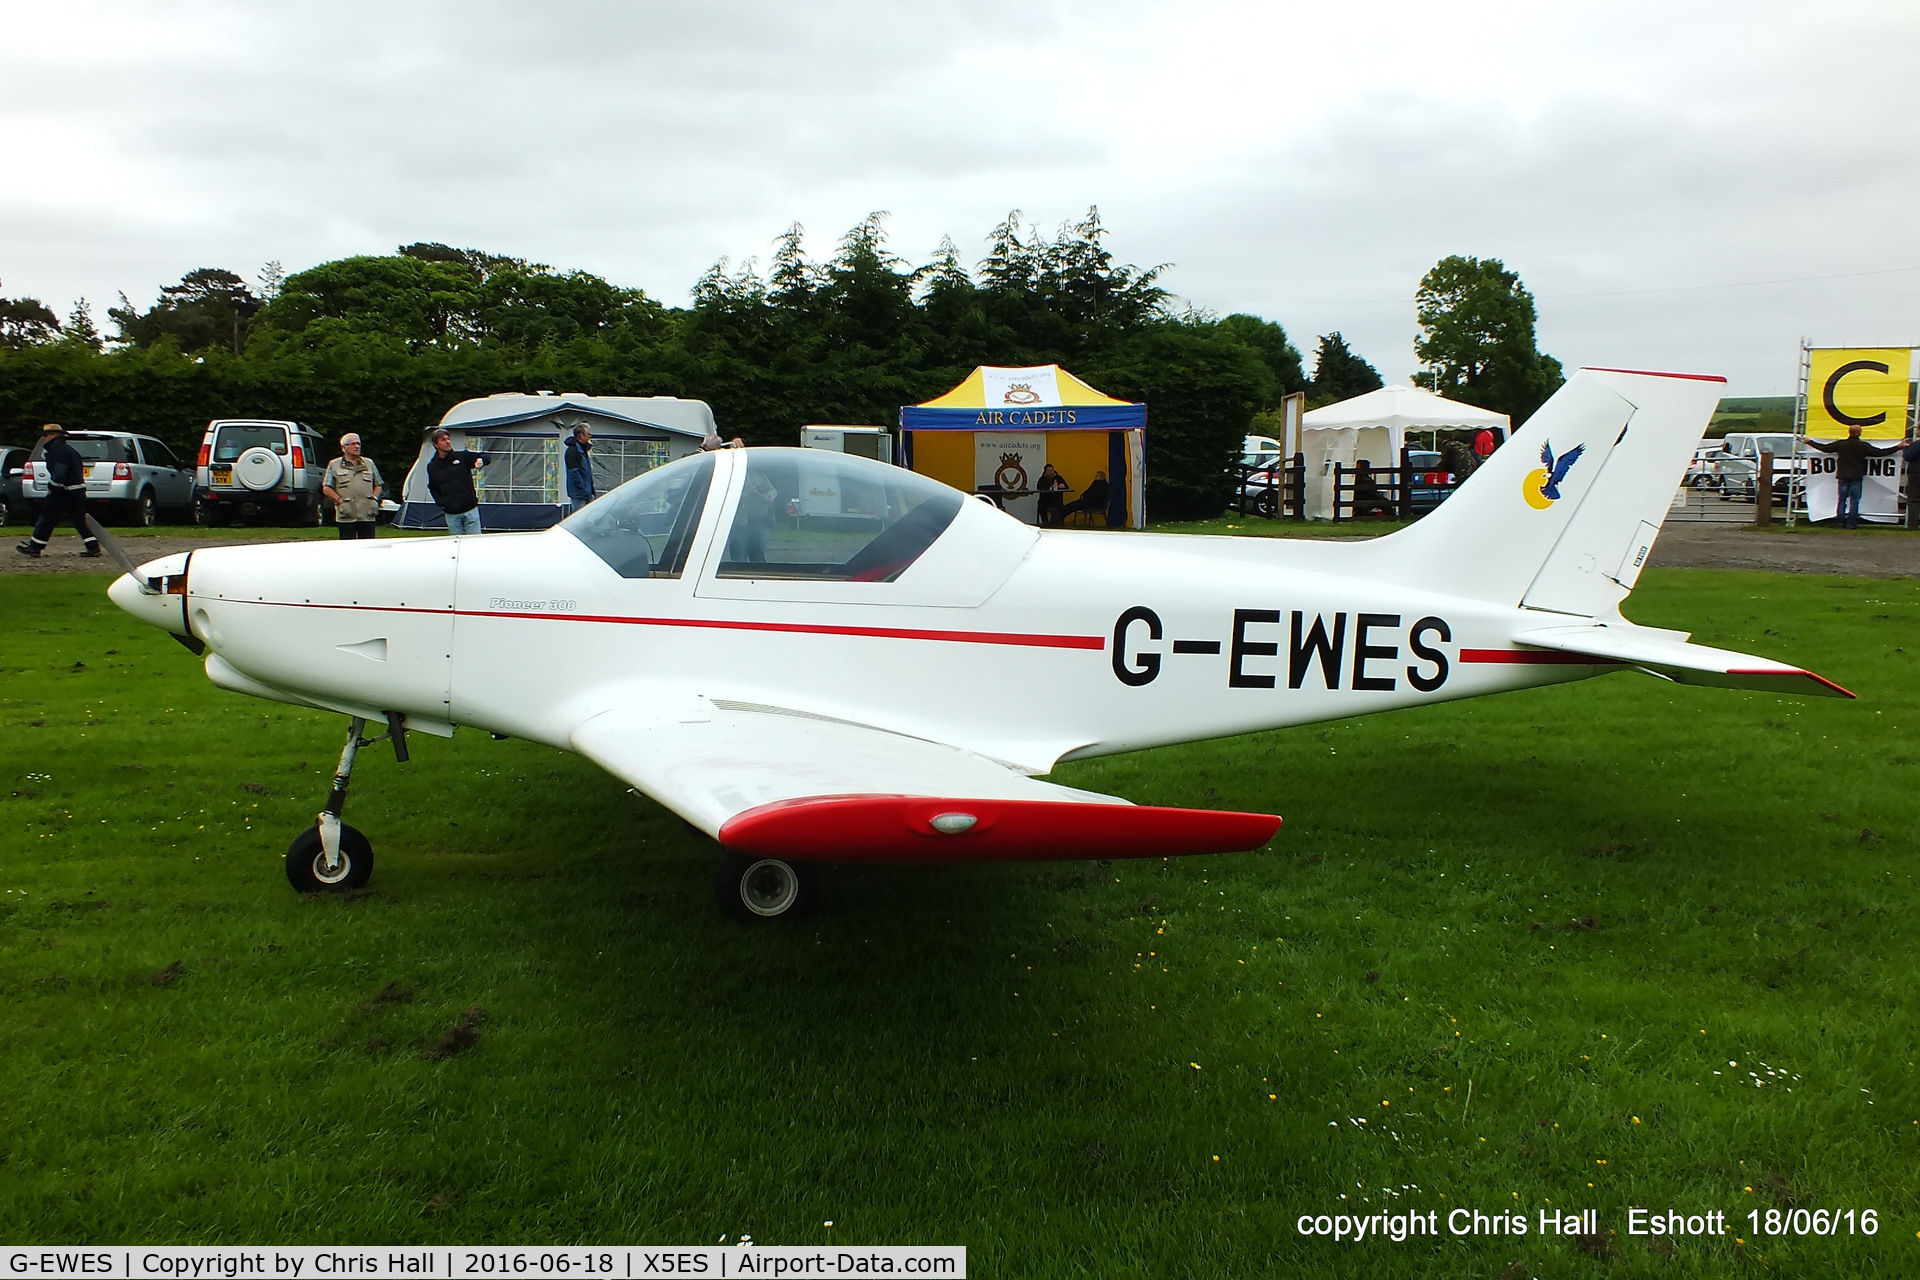 G-EWES, 2004 Alpi Aviation Pioneer 300 C/N PFA 330-14322, at the Great North Fly in. Eshott